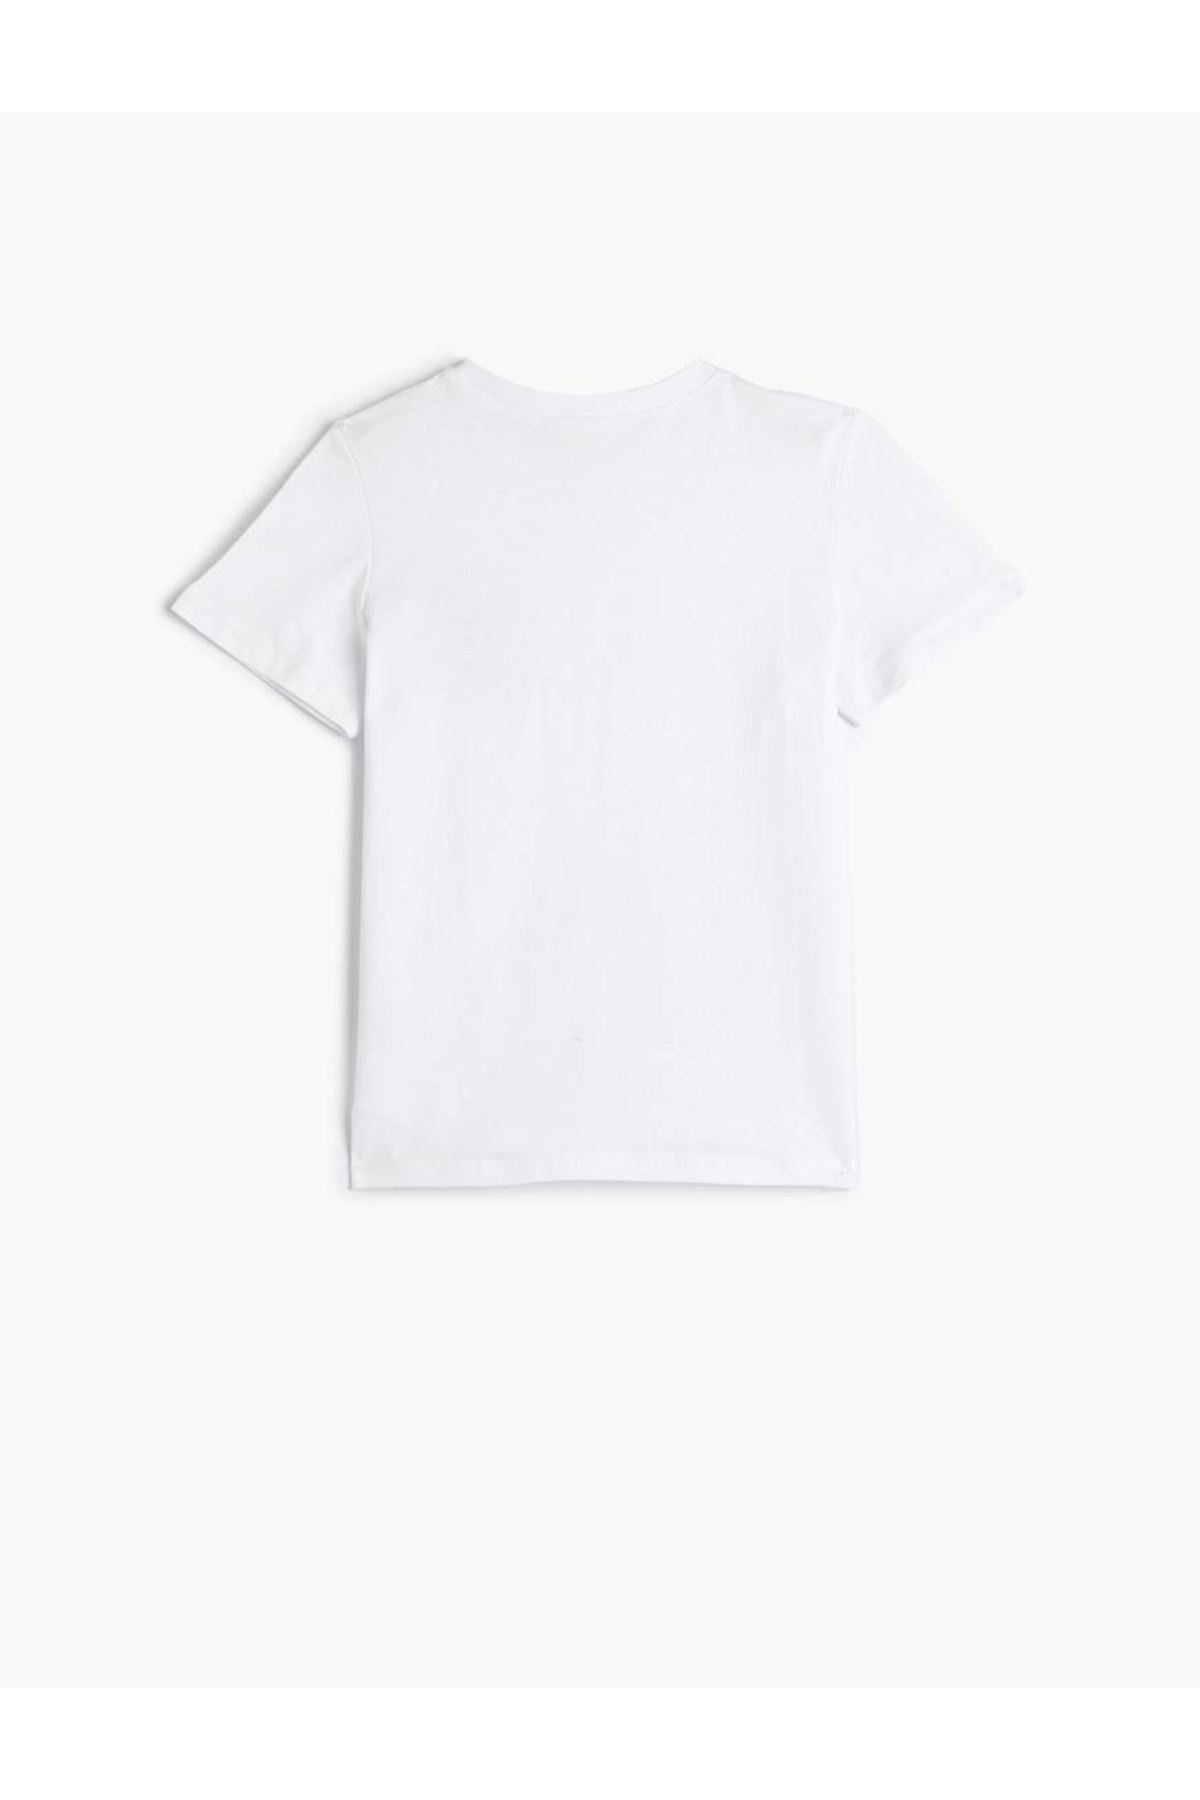 Koton Erkek Çocuk Beyaz Tişört - 4SKB10278TK